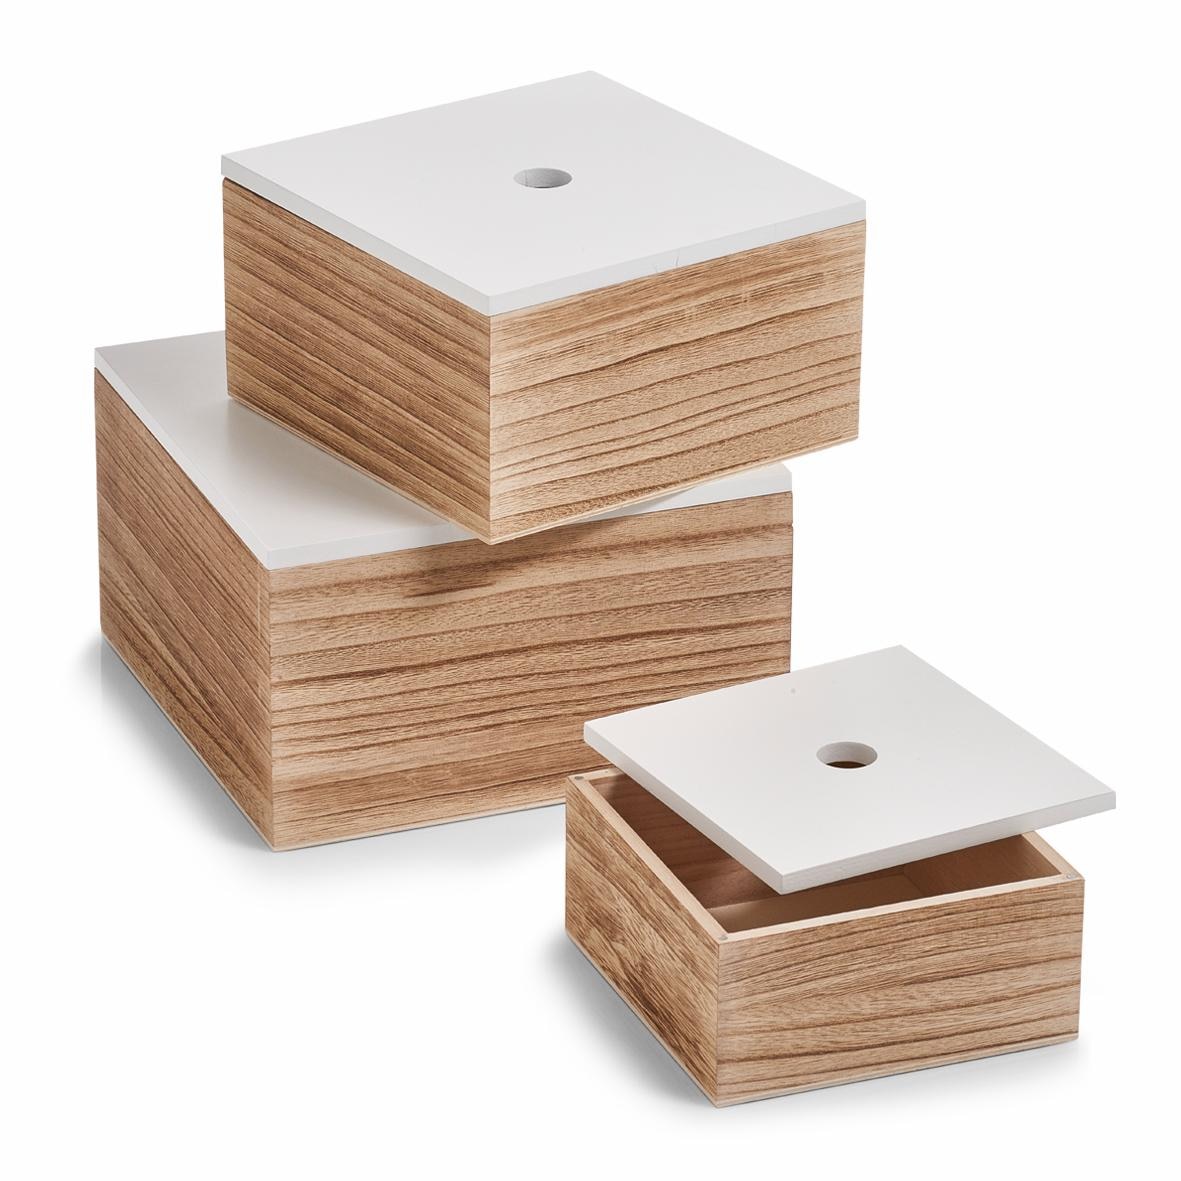 Zeller Present Aufbewahrungsbox, 3er Set, Holz, weiss/natur